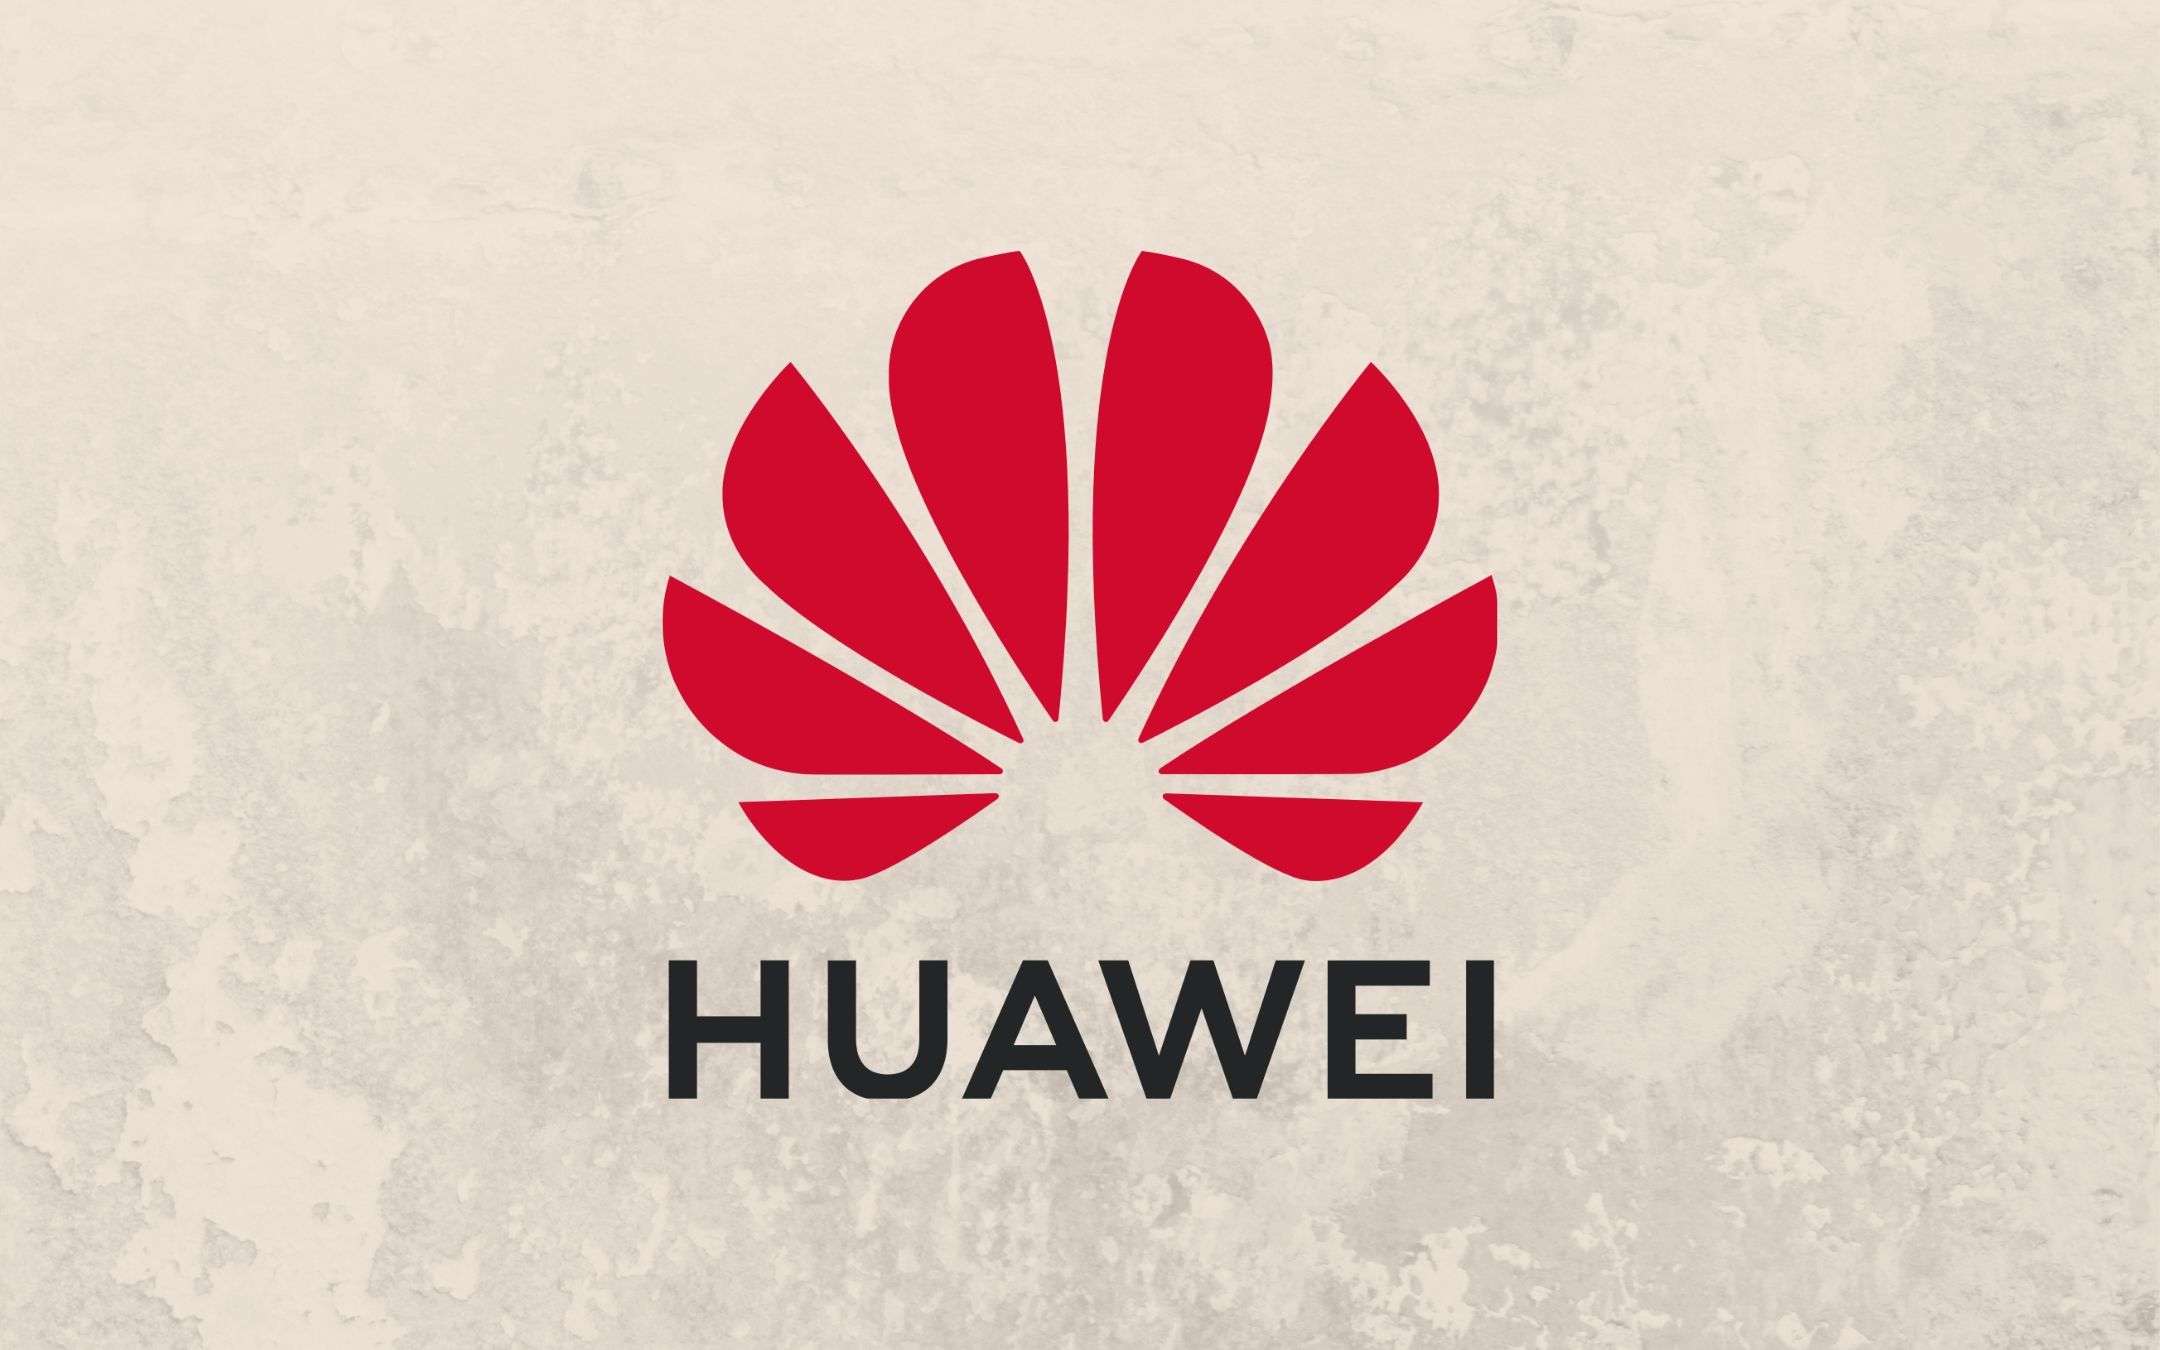 Huawei: charger da 66W ottiene certificazione 3C